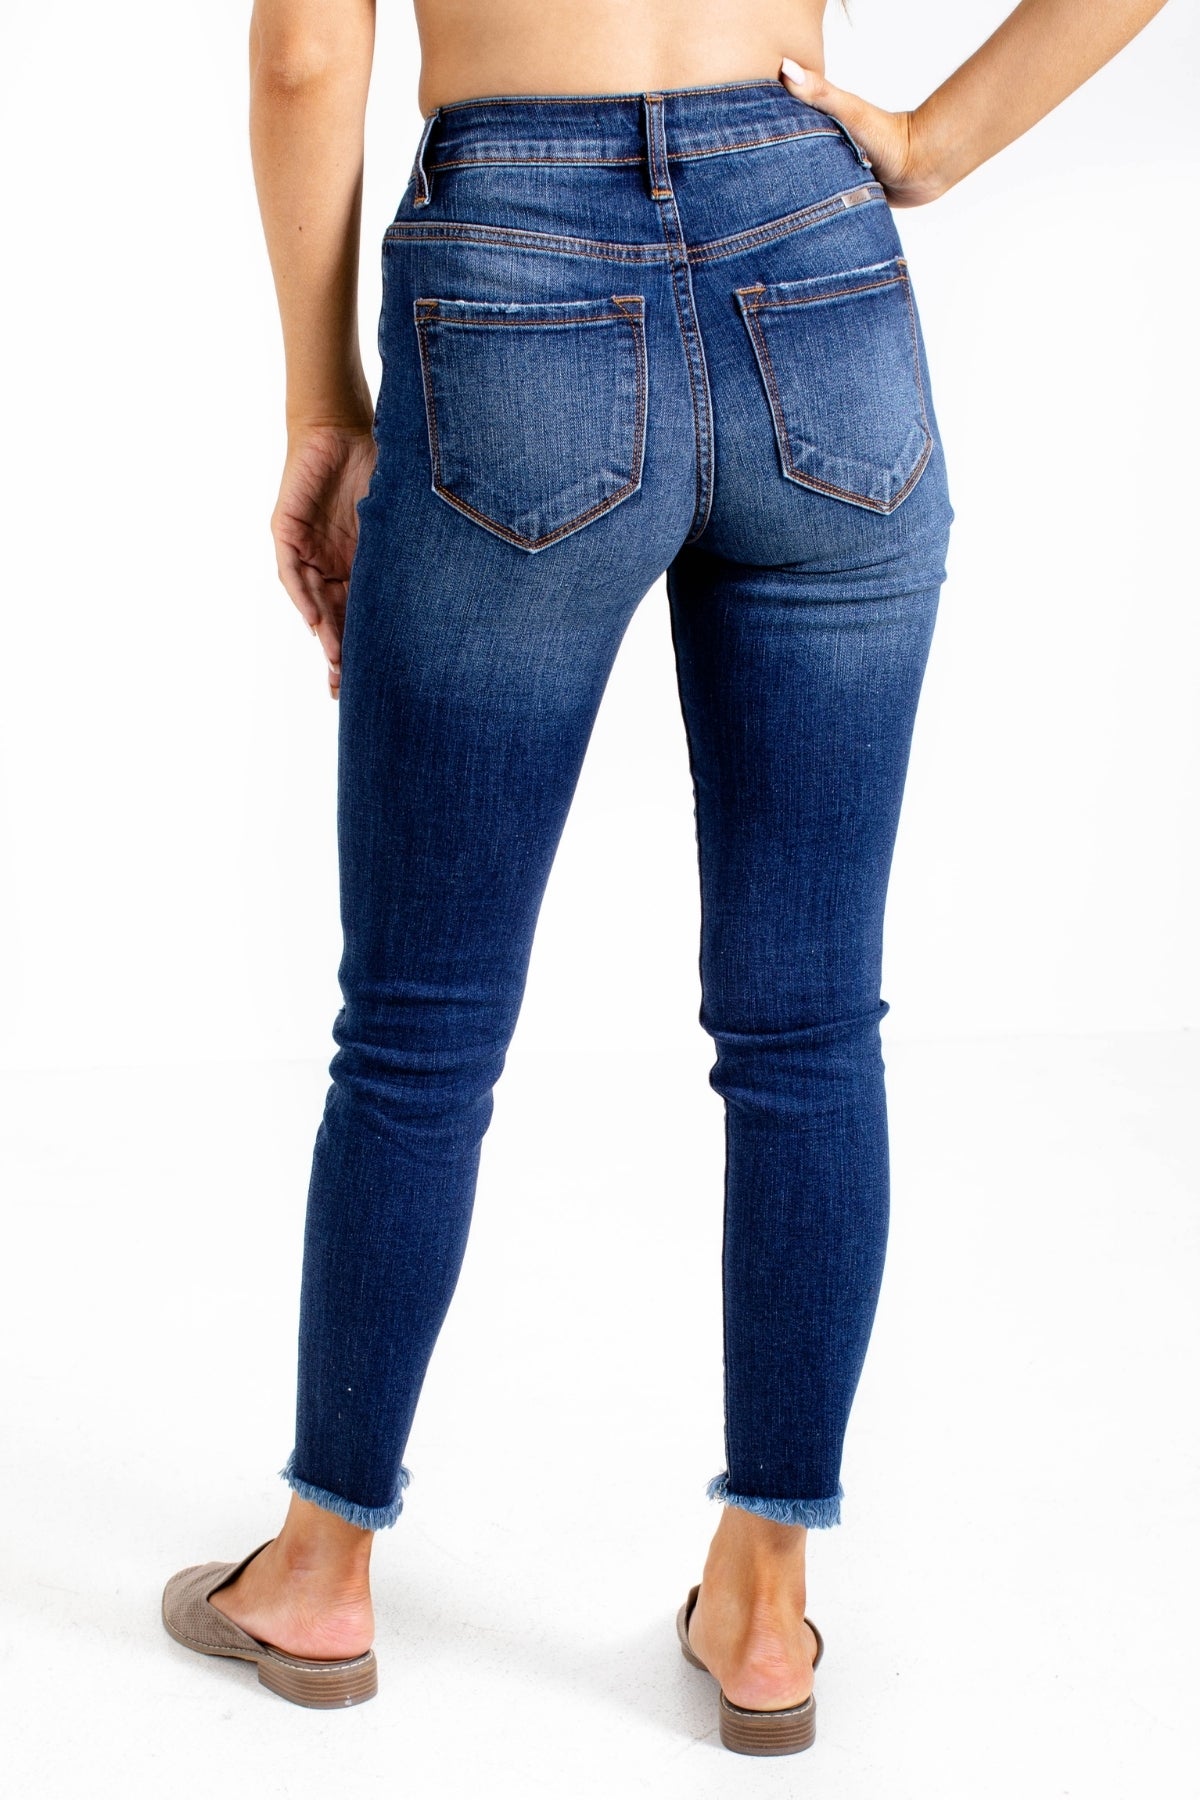 Back Pockets on Denim Jeans by Bella Ella Boutique.